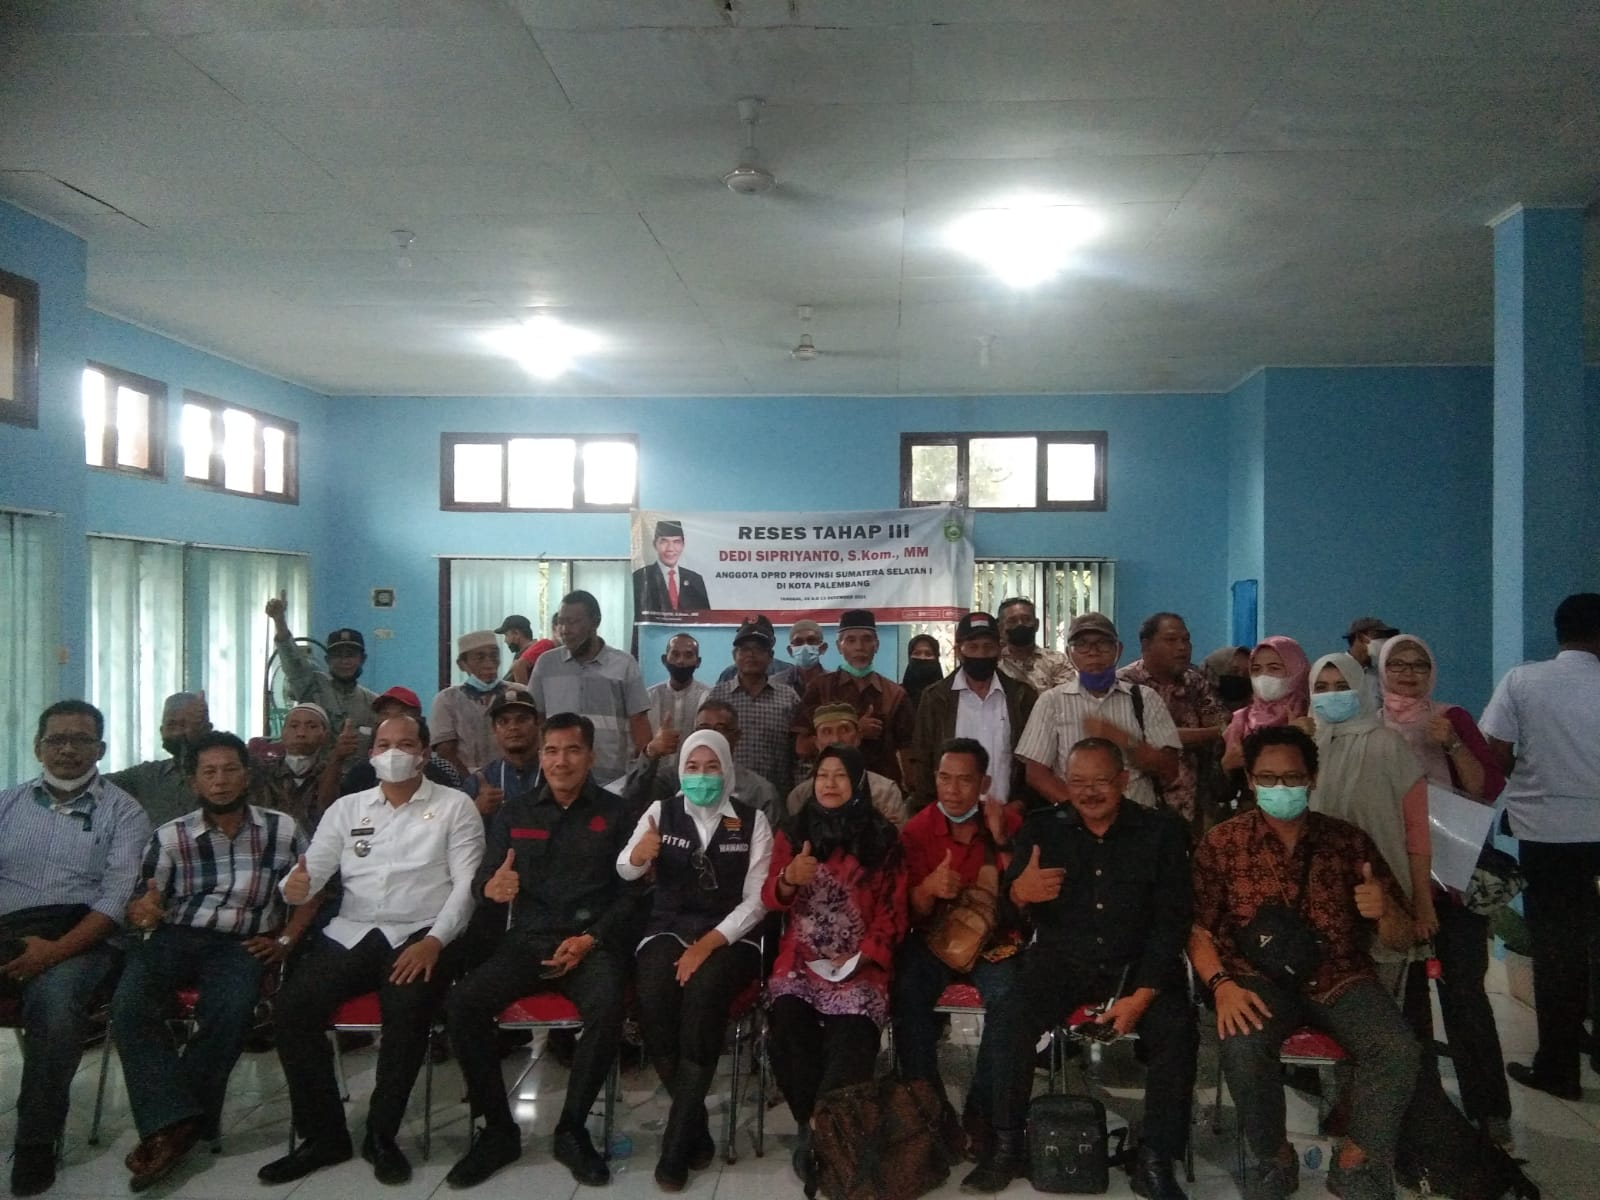 Anggota DPRD Provinsi Sumatera Selatan Dapil I Kota Palembang Dedi Sipriyanto, SKom MM gelar reses tahap III